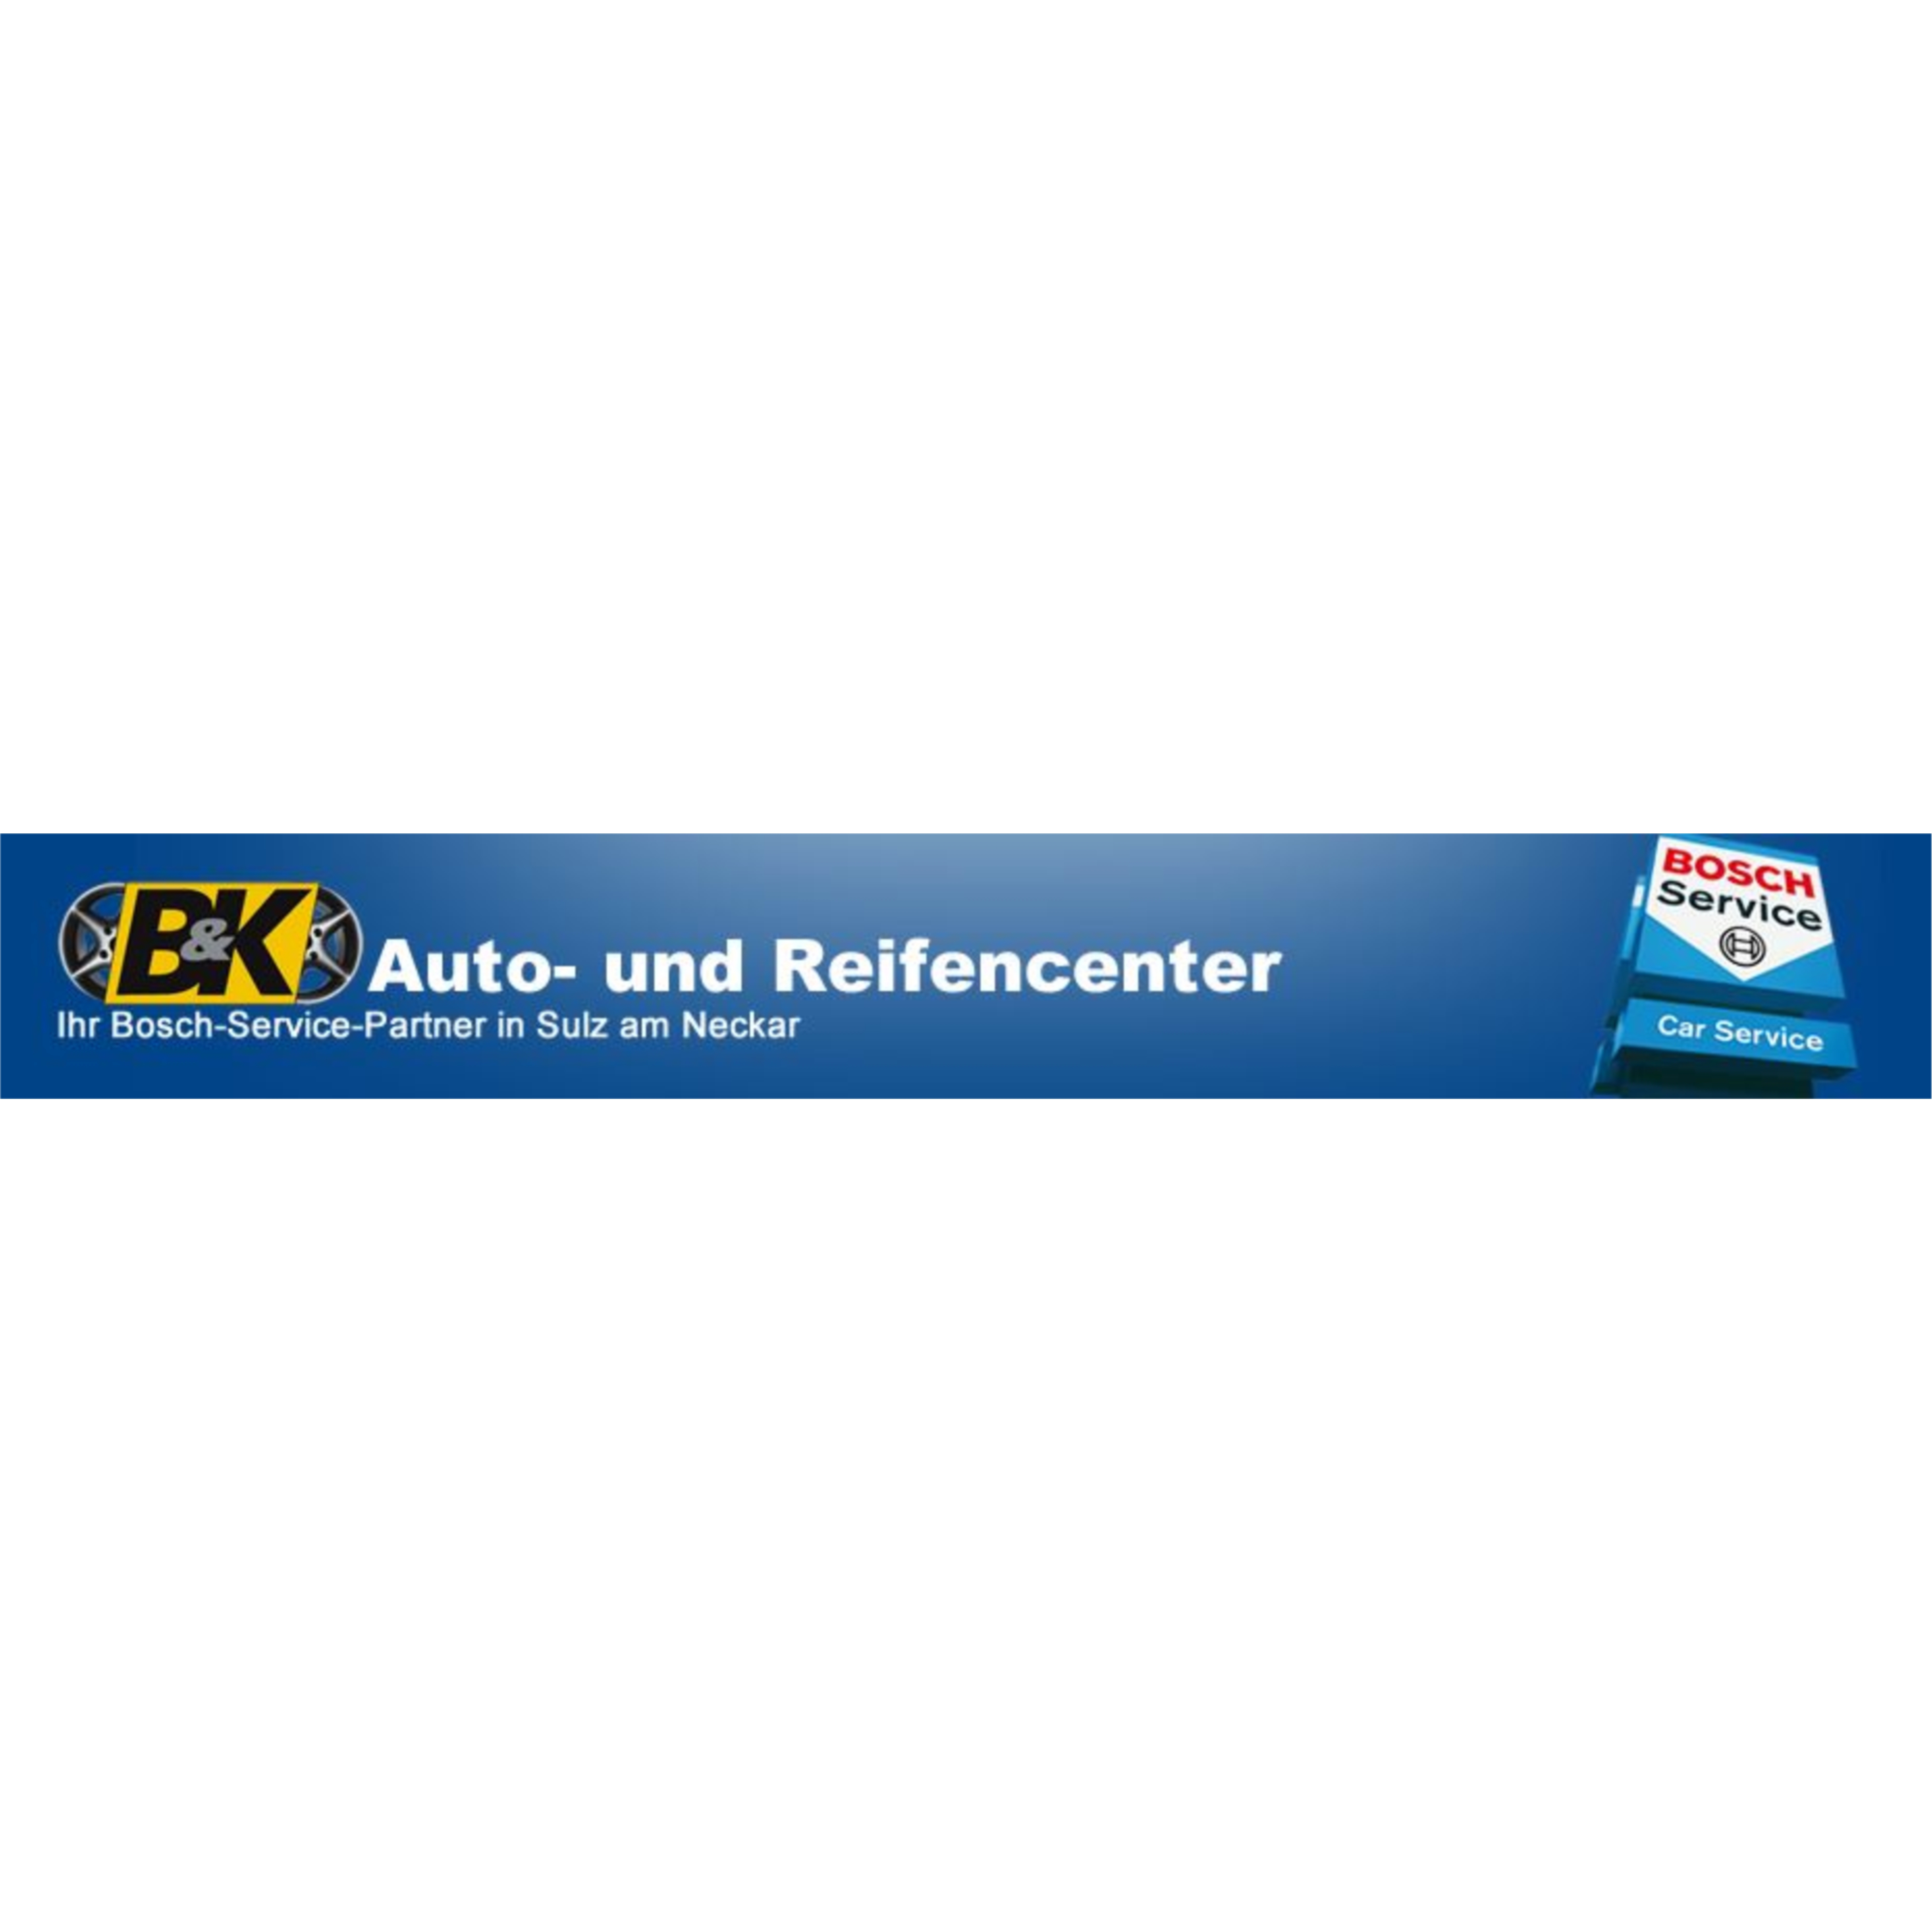 B & K Auto- und Reifencenter e. K. - Bosch Car Service  